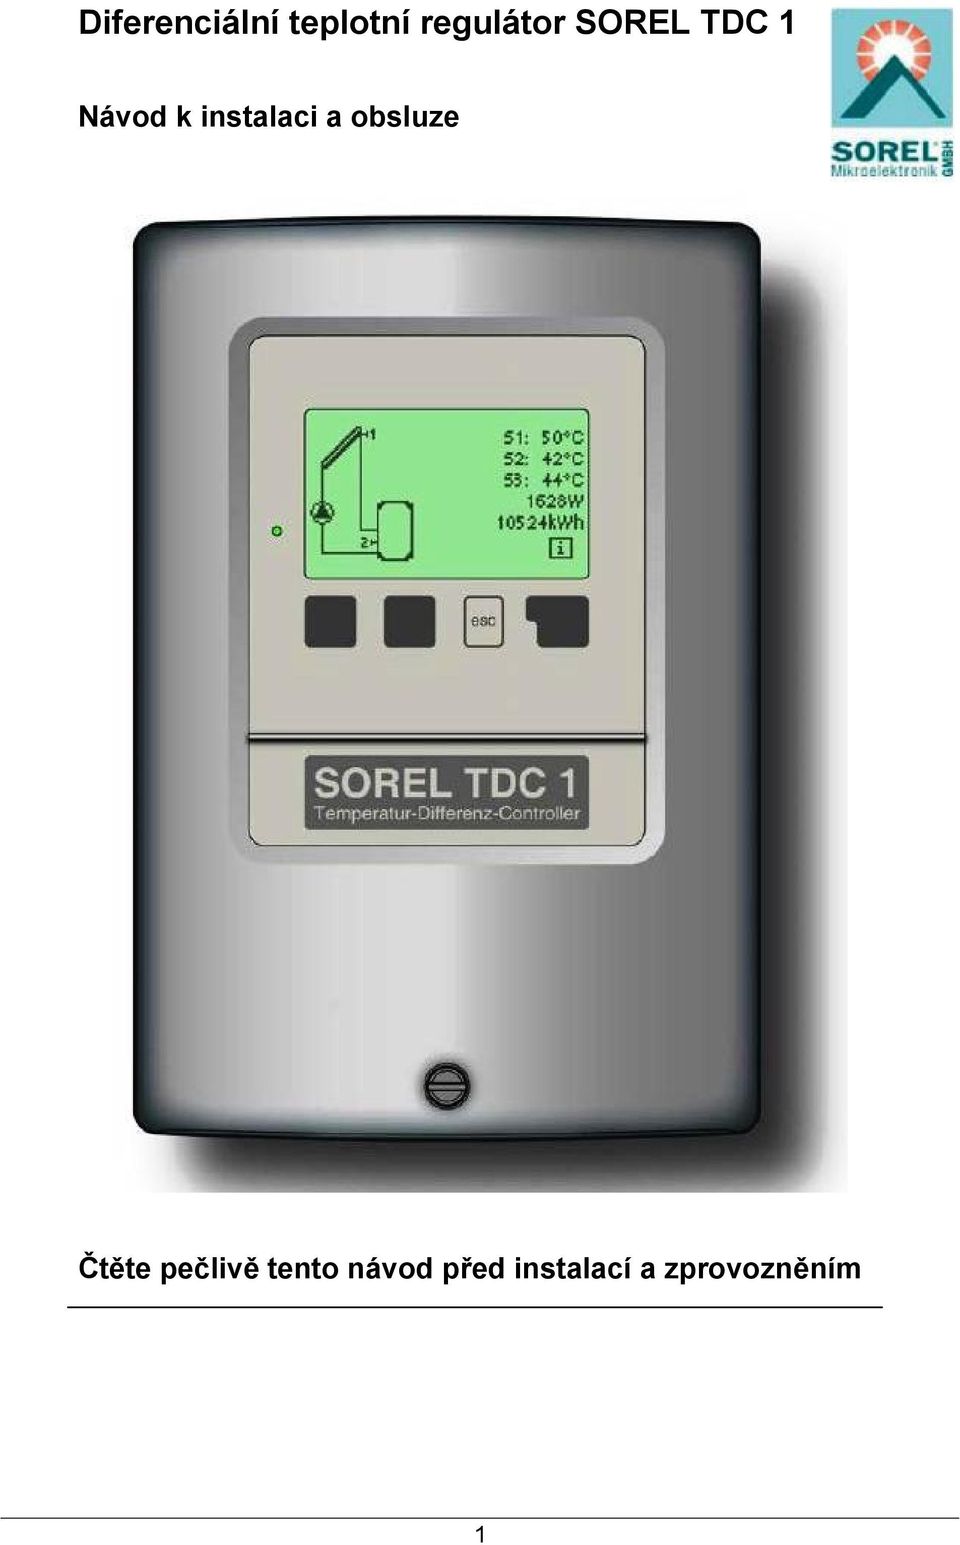 Diferenciální teplotní regulátor SOREL TDC 1 - PDF Stažení zdarma